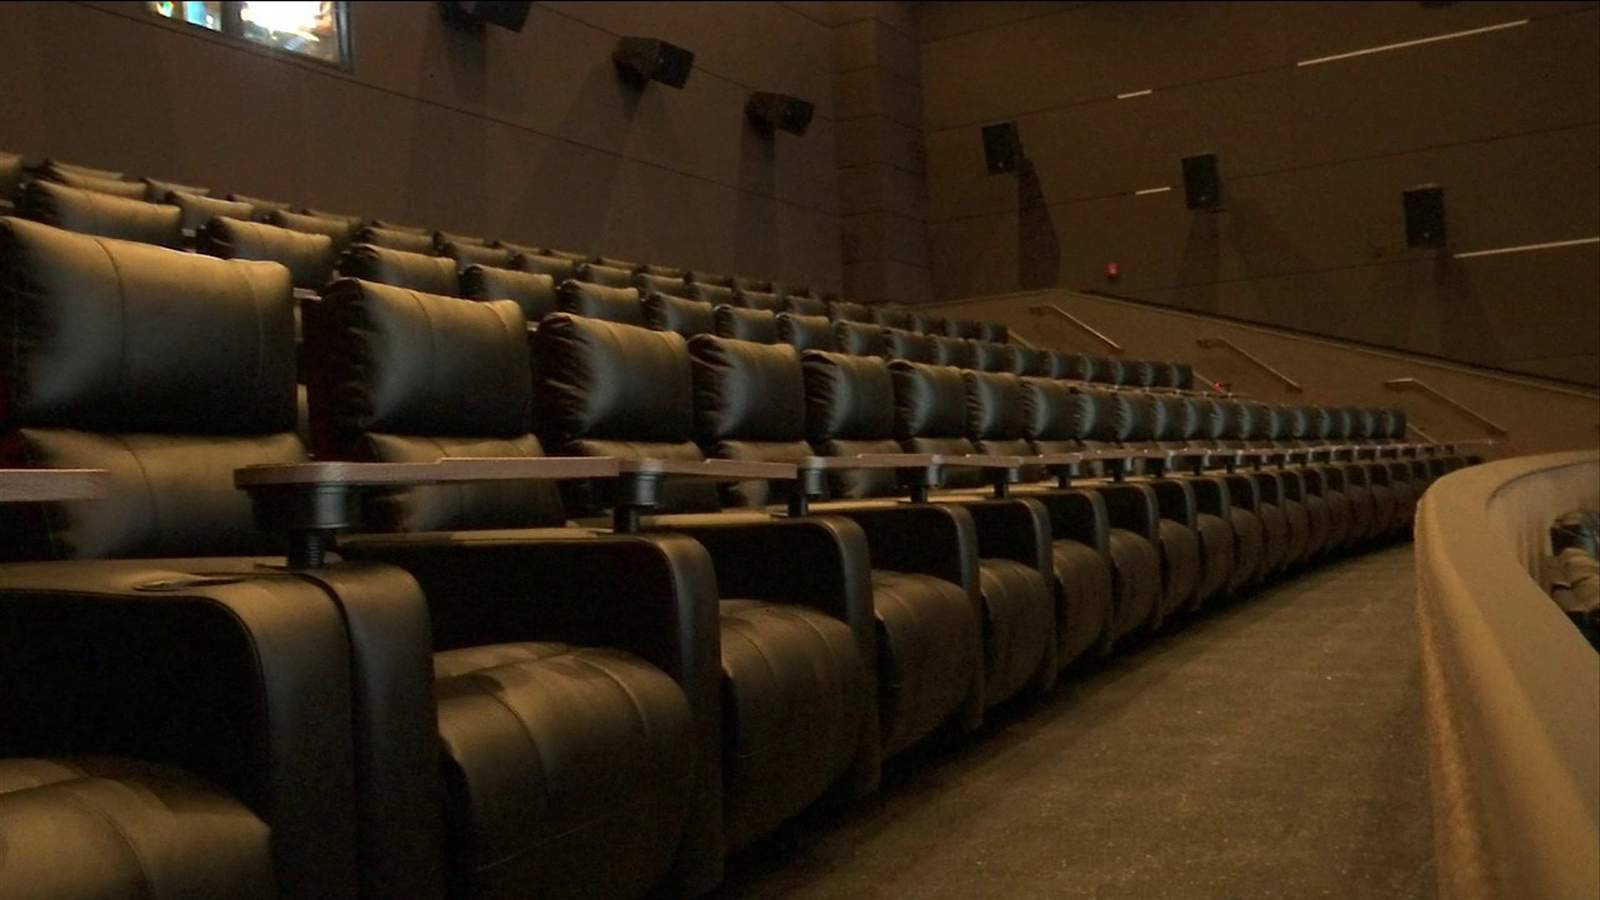 Durbin Park movie theater set to open Thursday